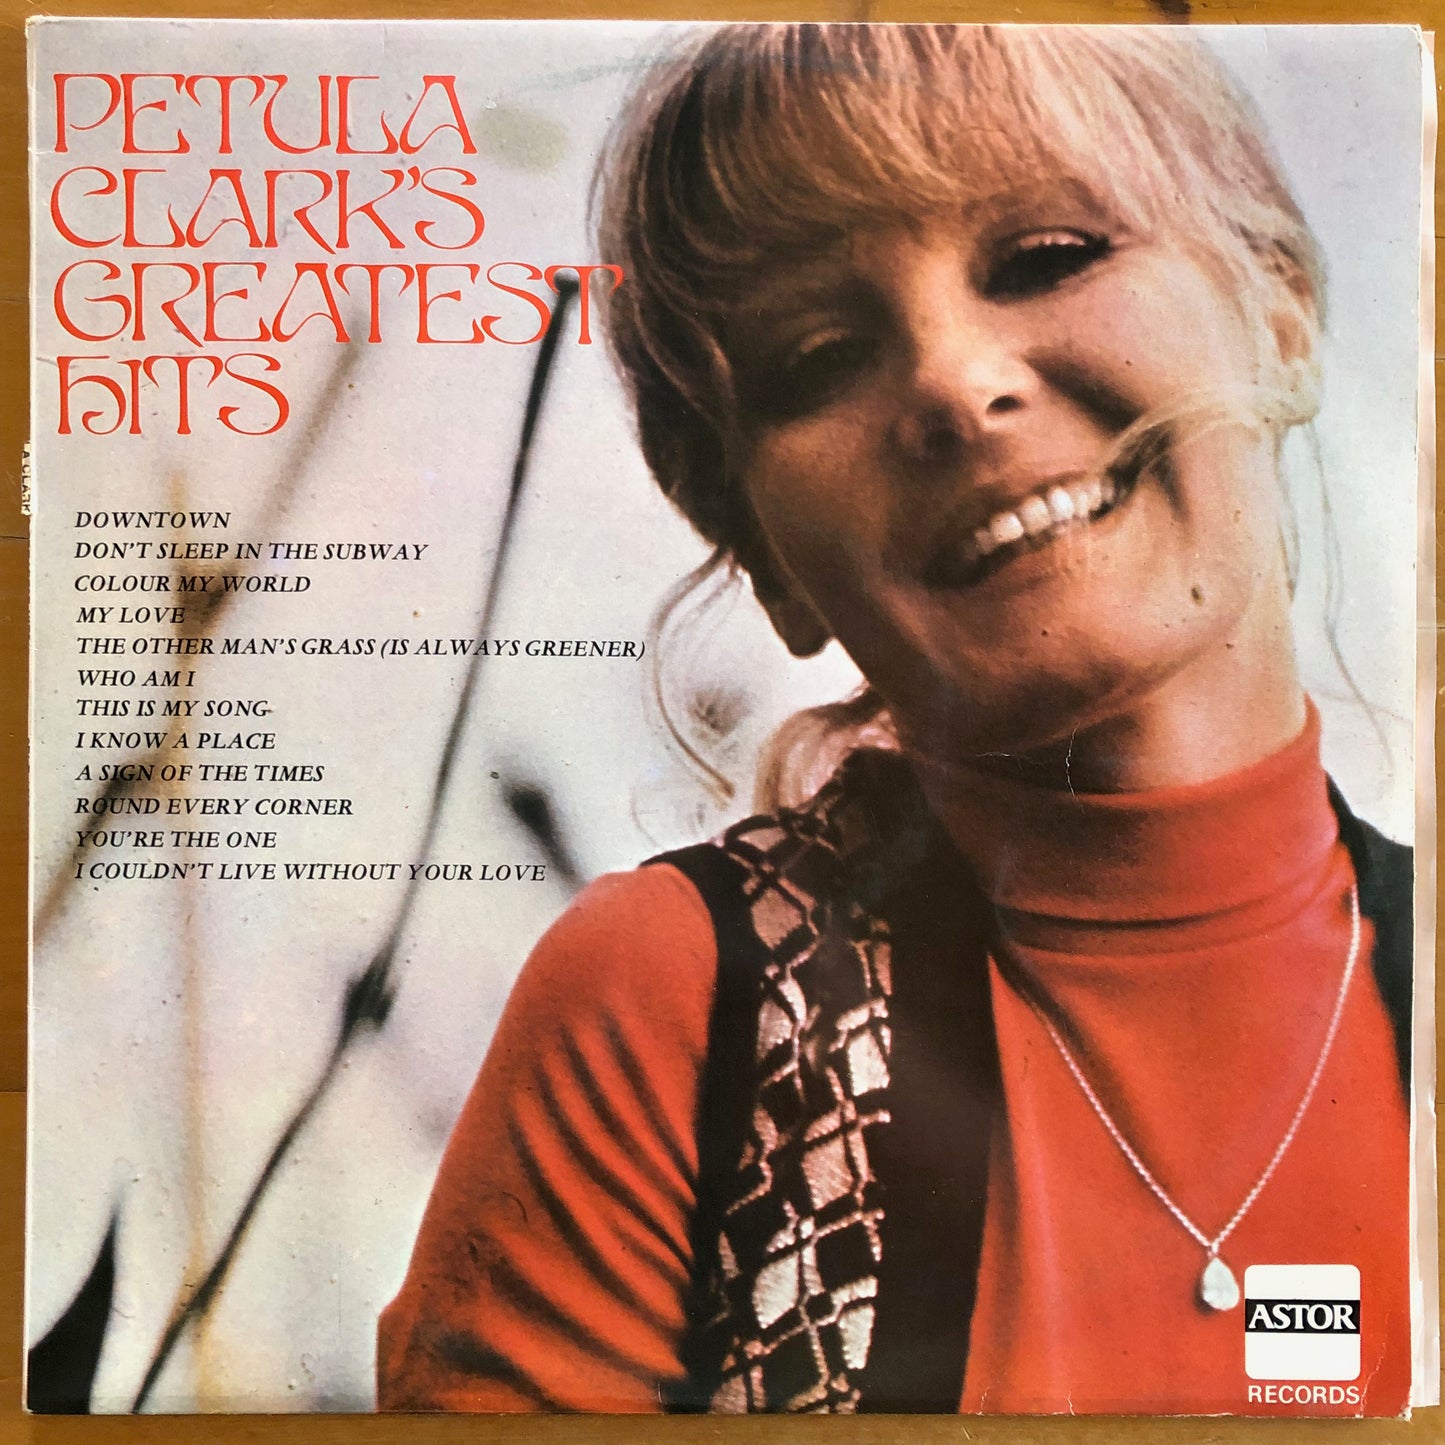 Petula Clark - Petula Clark's Greatest Hits